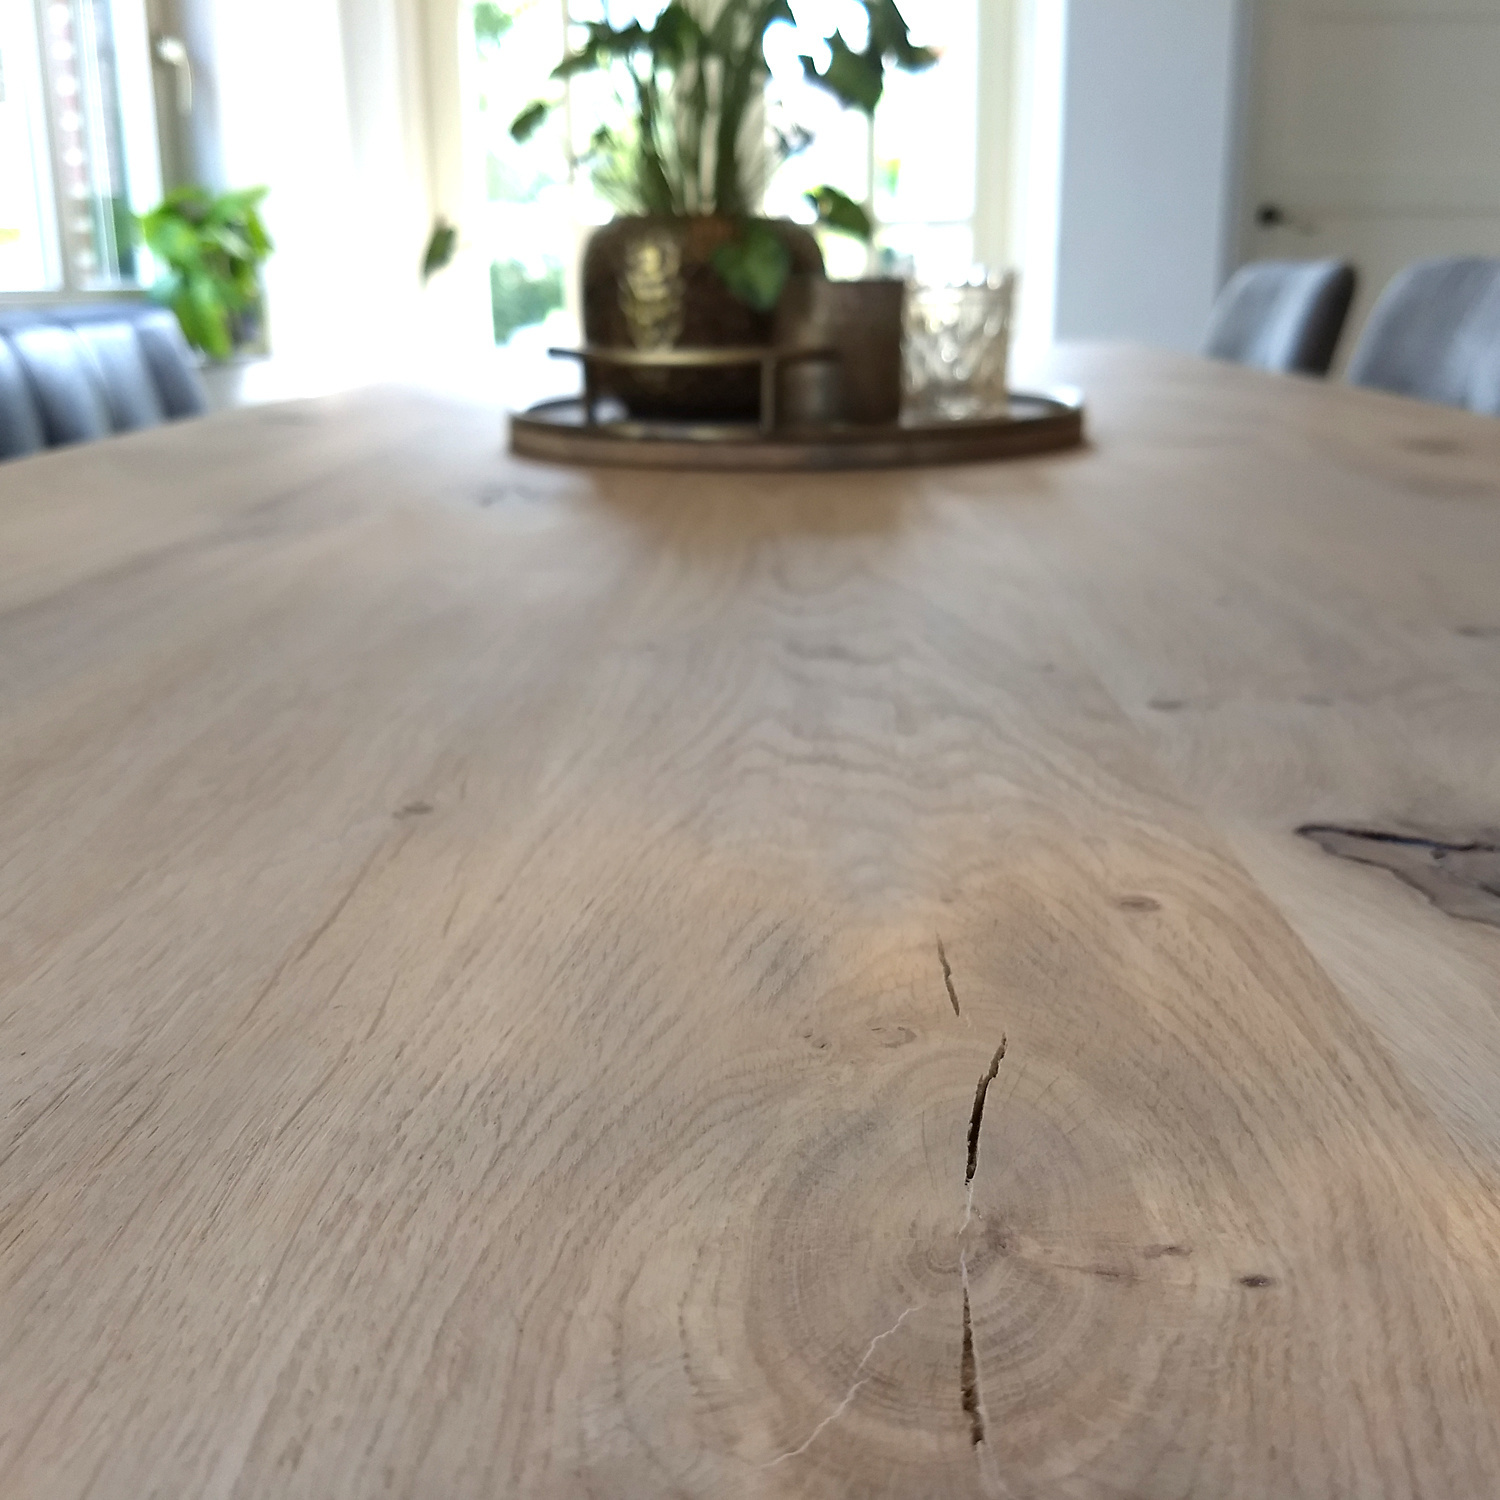  Tischplatte Eiche nach Maß - 2,3 cm dick - Eichenholz rustikal - Eiche Tischplatte massiv - verleimt & künstlich getrocknet (HF 8-12%) - 50-120x50-350 cm